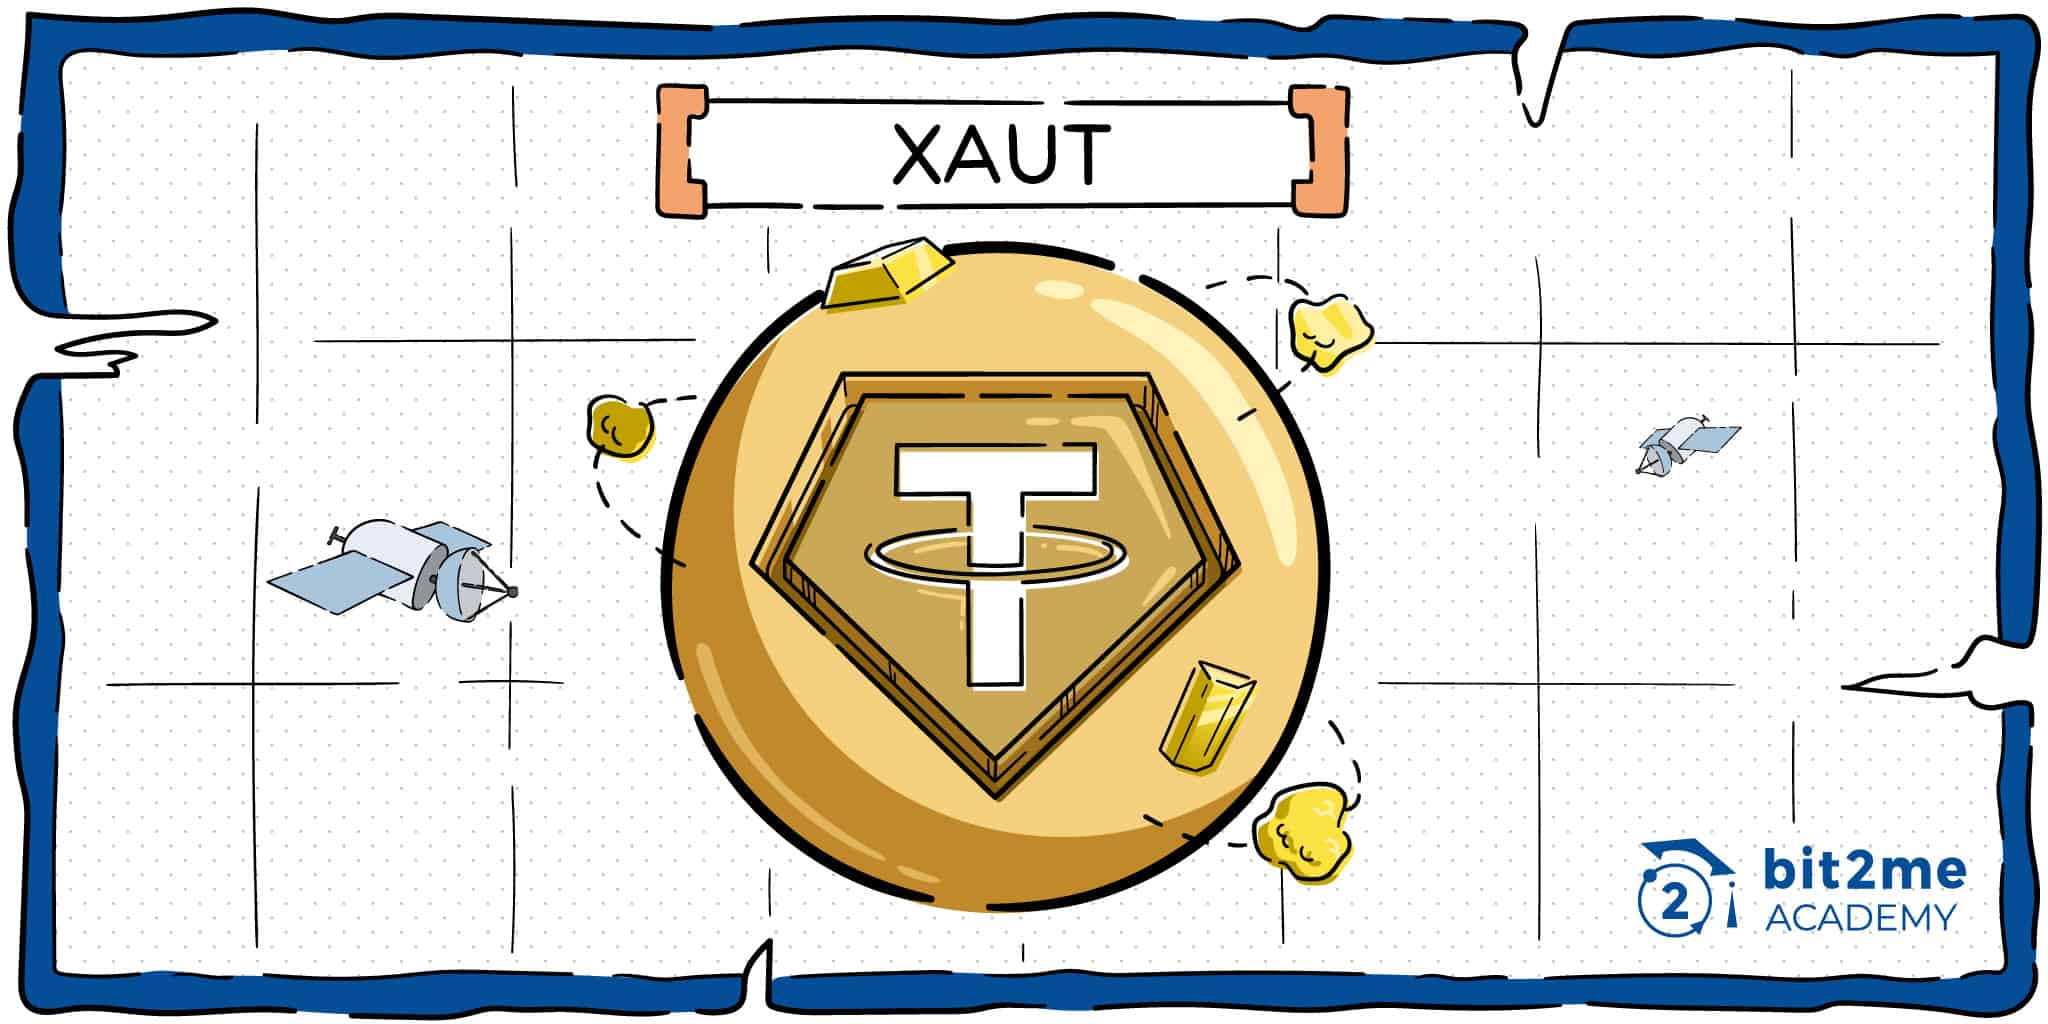 XAUT el token vinculado al oro de Tether